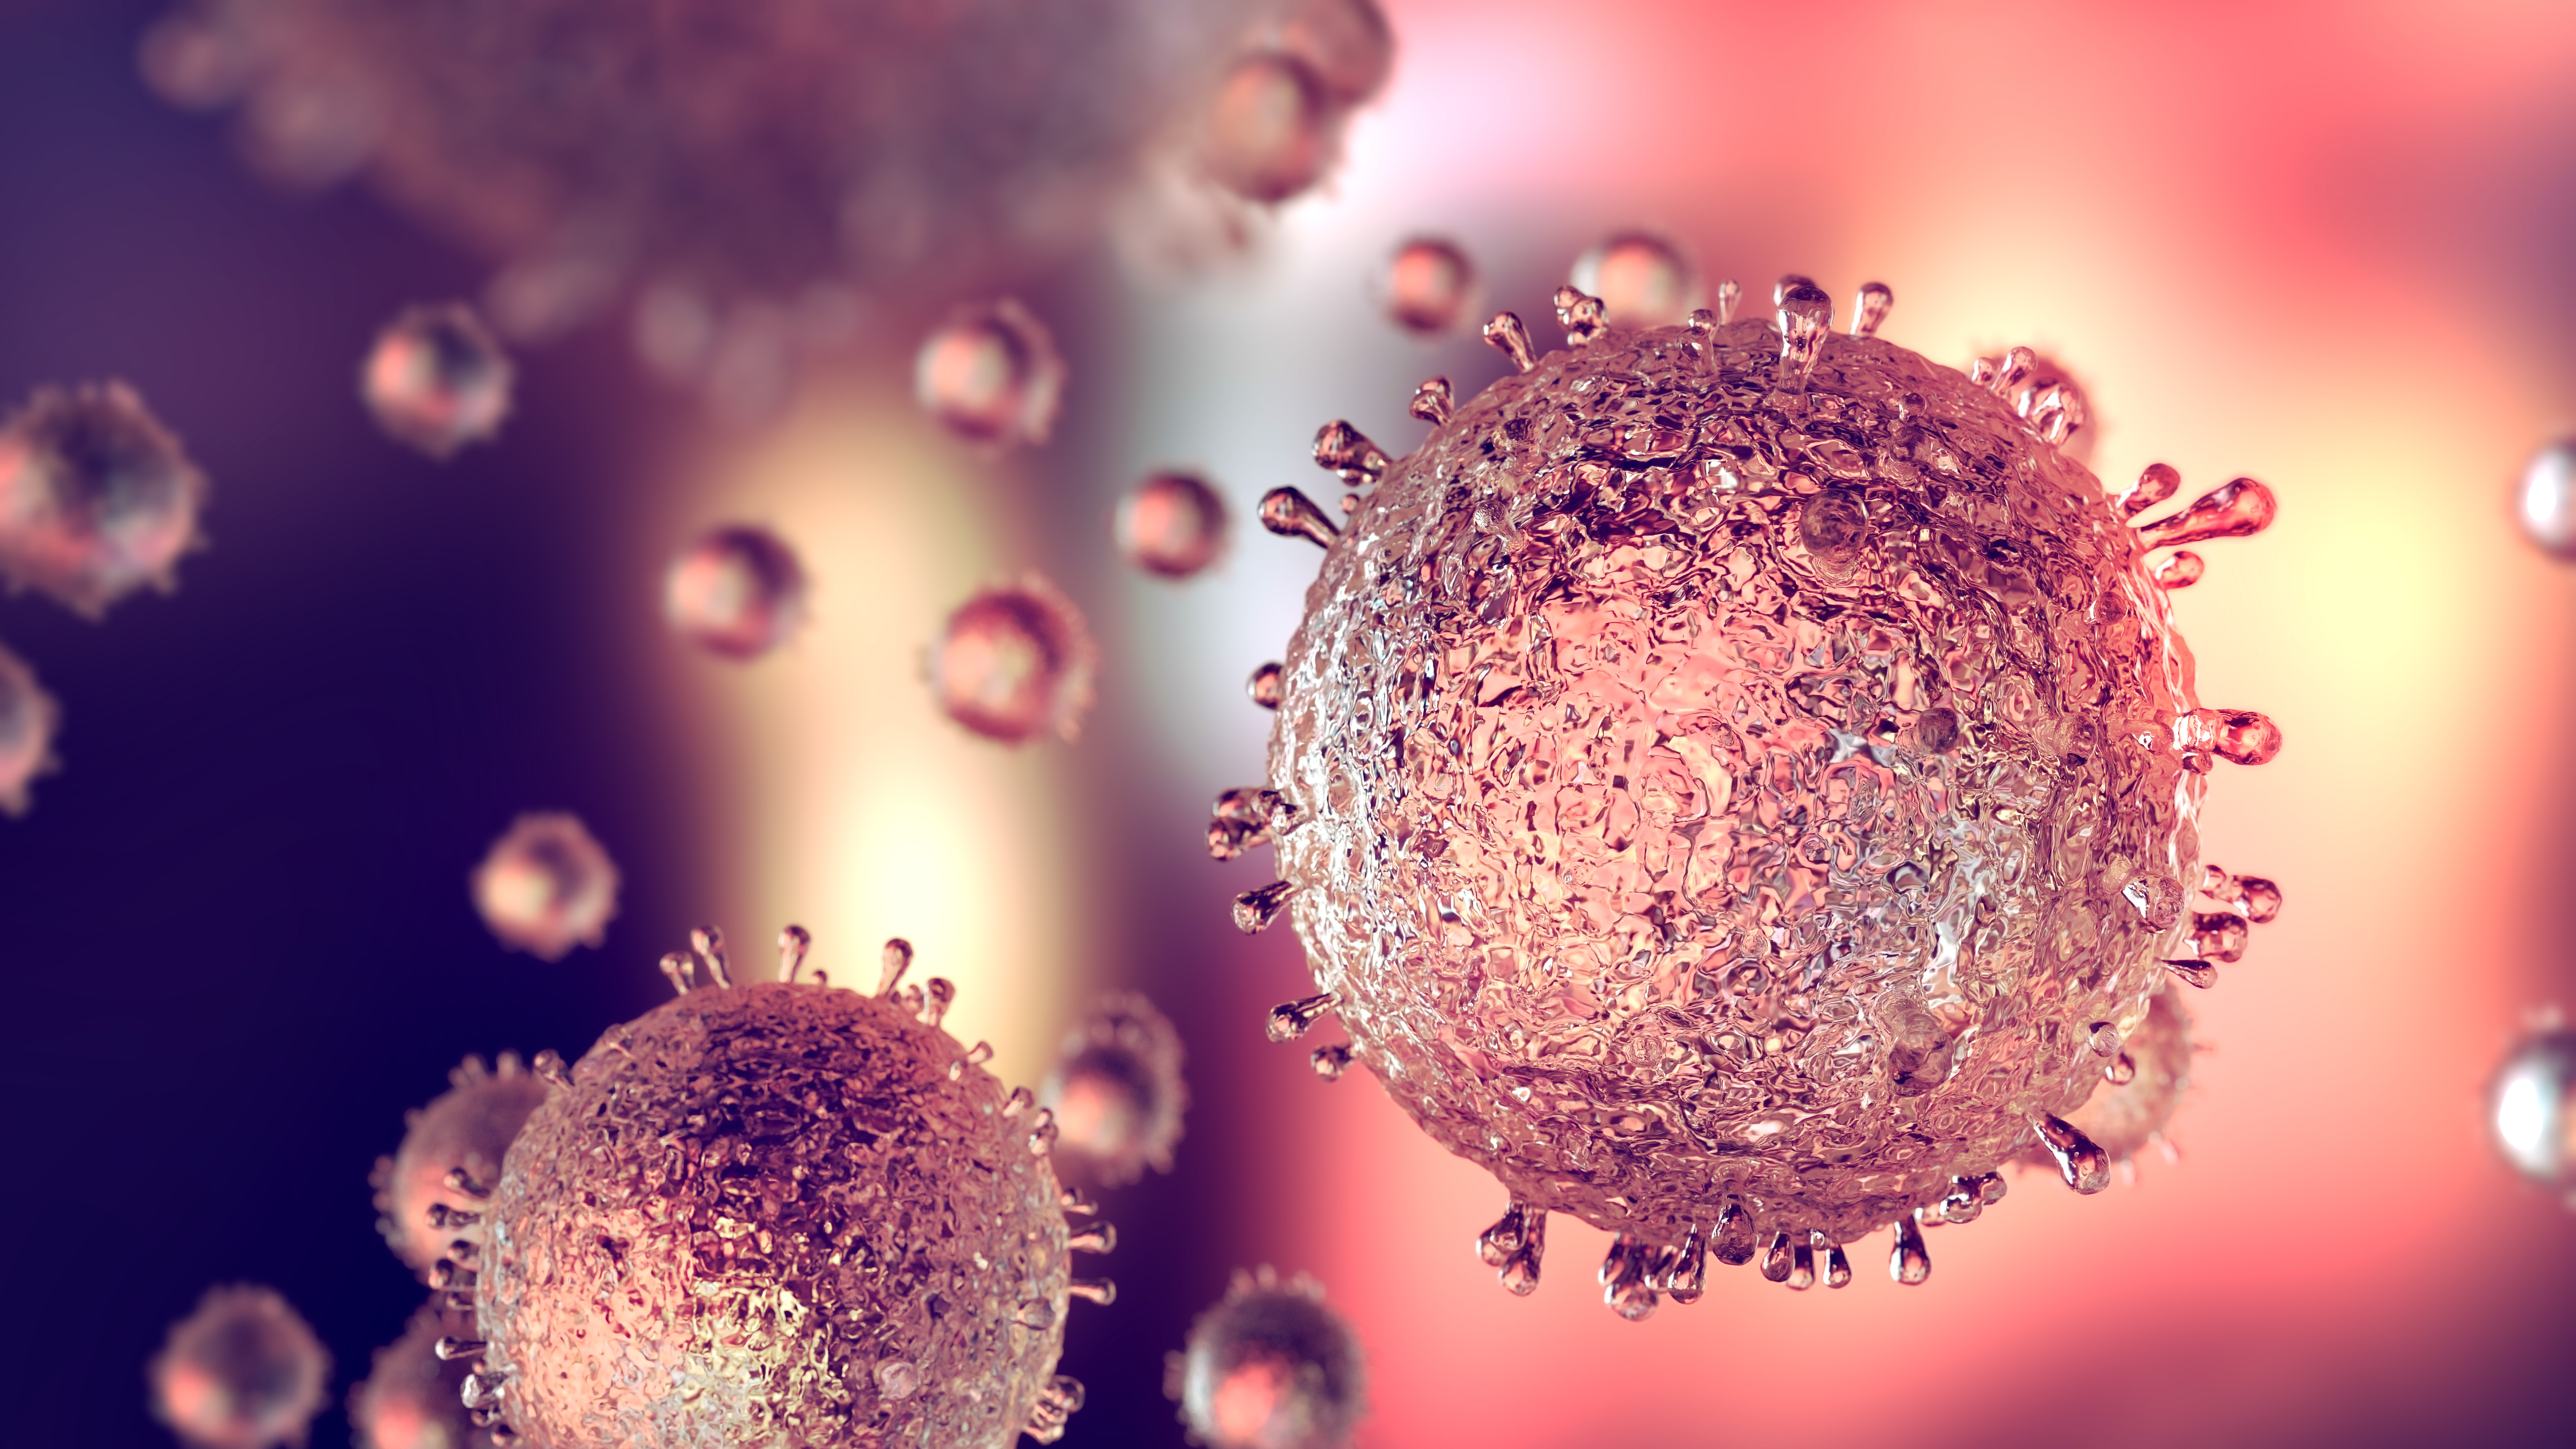 Are mutations making coronavirus more aggressive